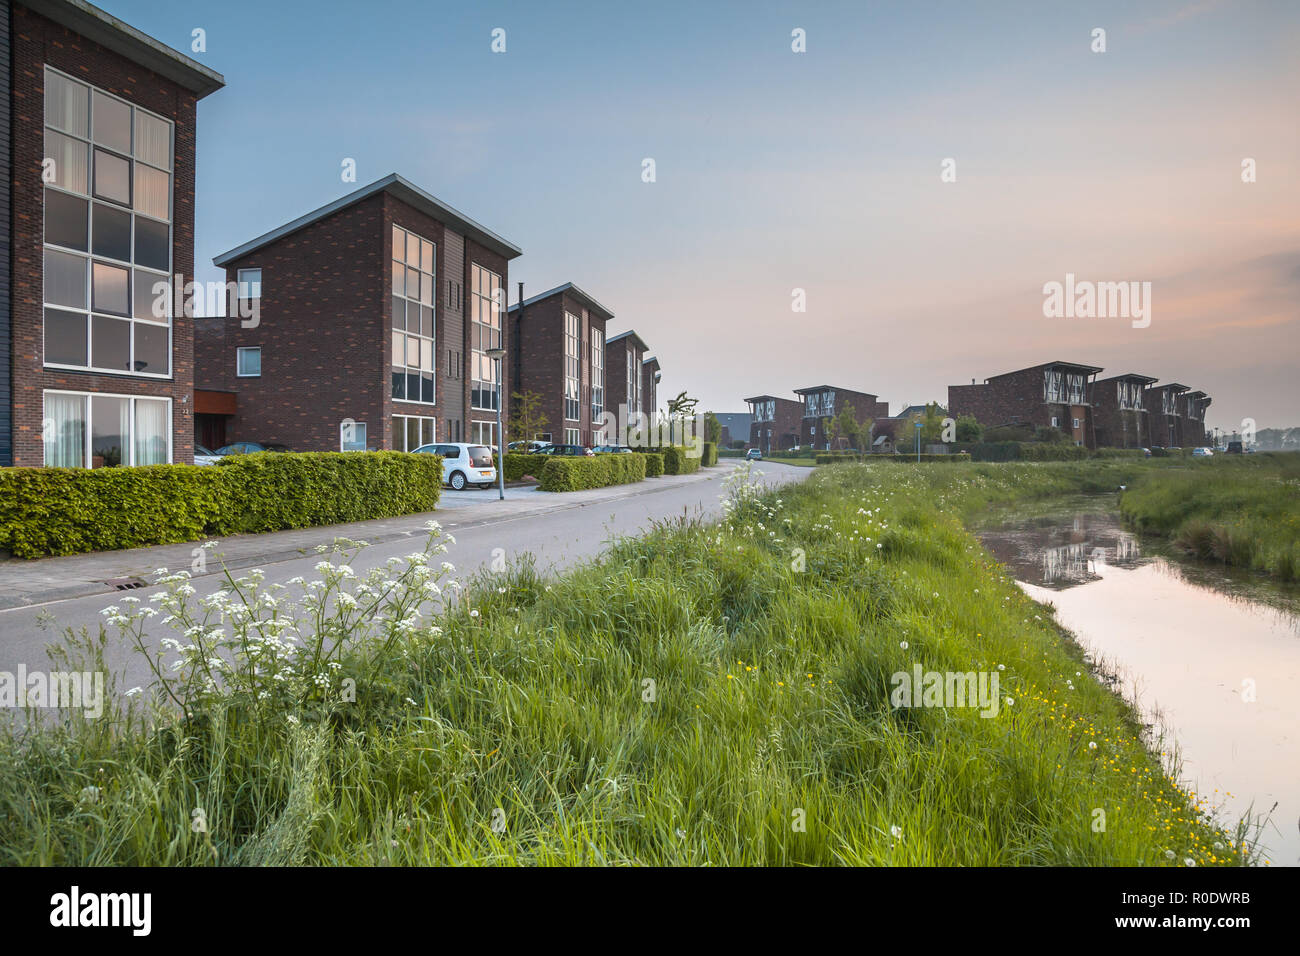 Les grandes maisons de banlieue de classe moyenne moderne à Groningue, Pays-Bas Banque D'Images